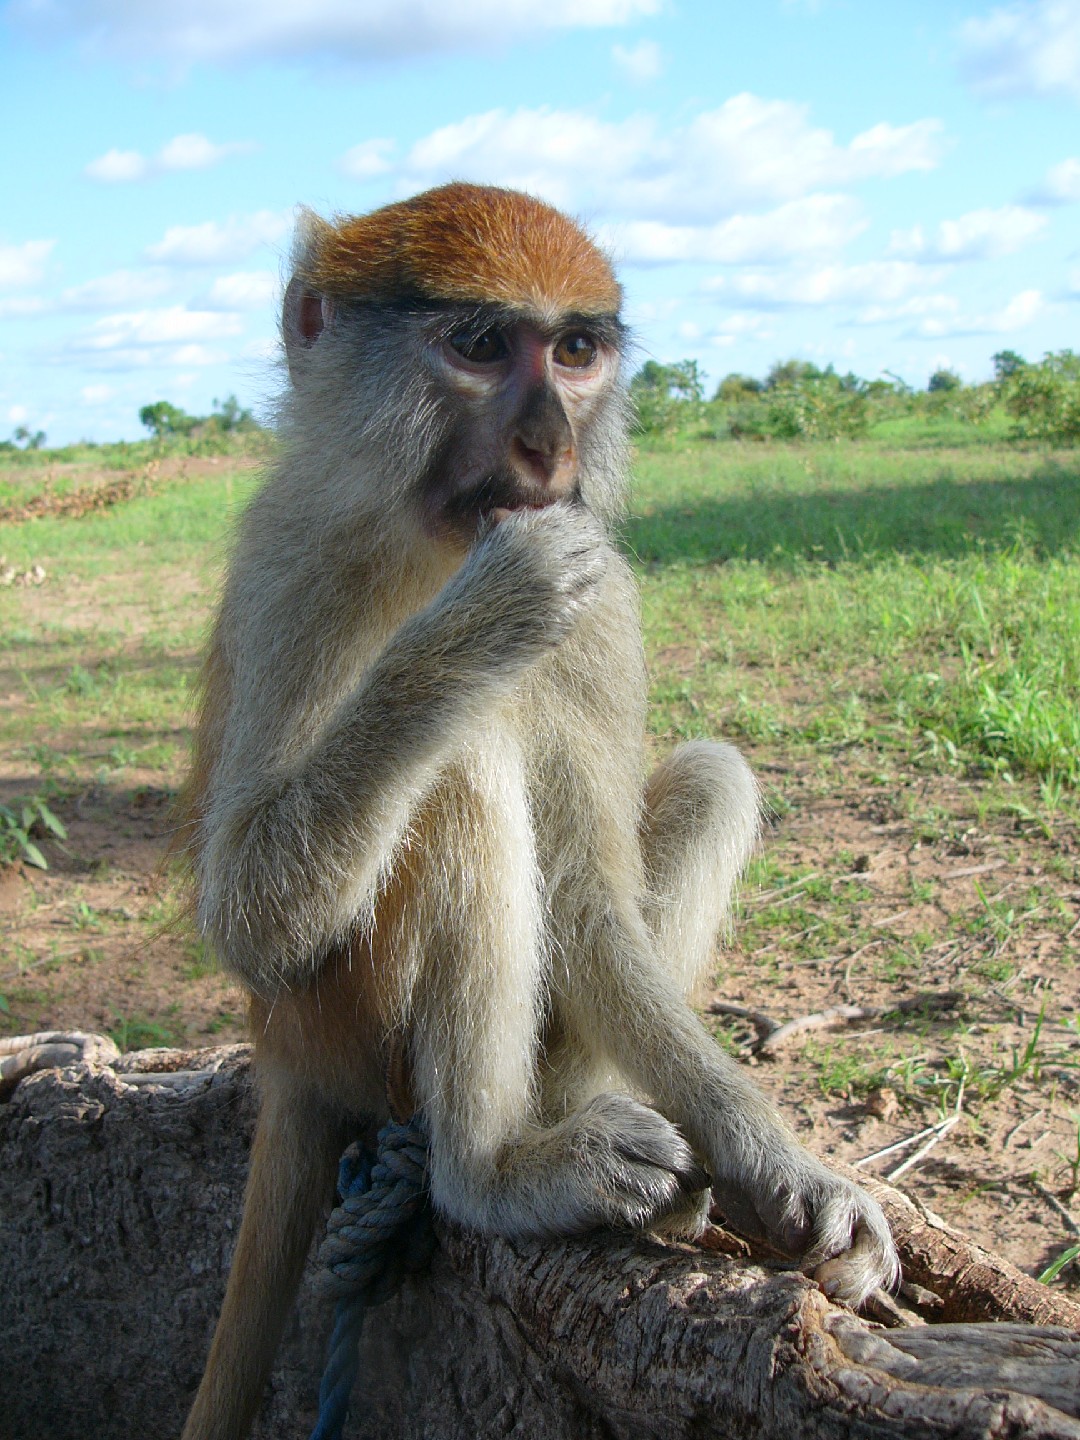 Patas monkeys (Erythrocebus)